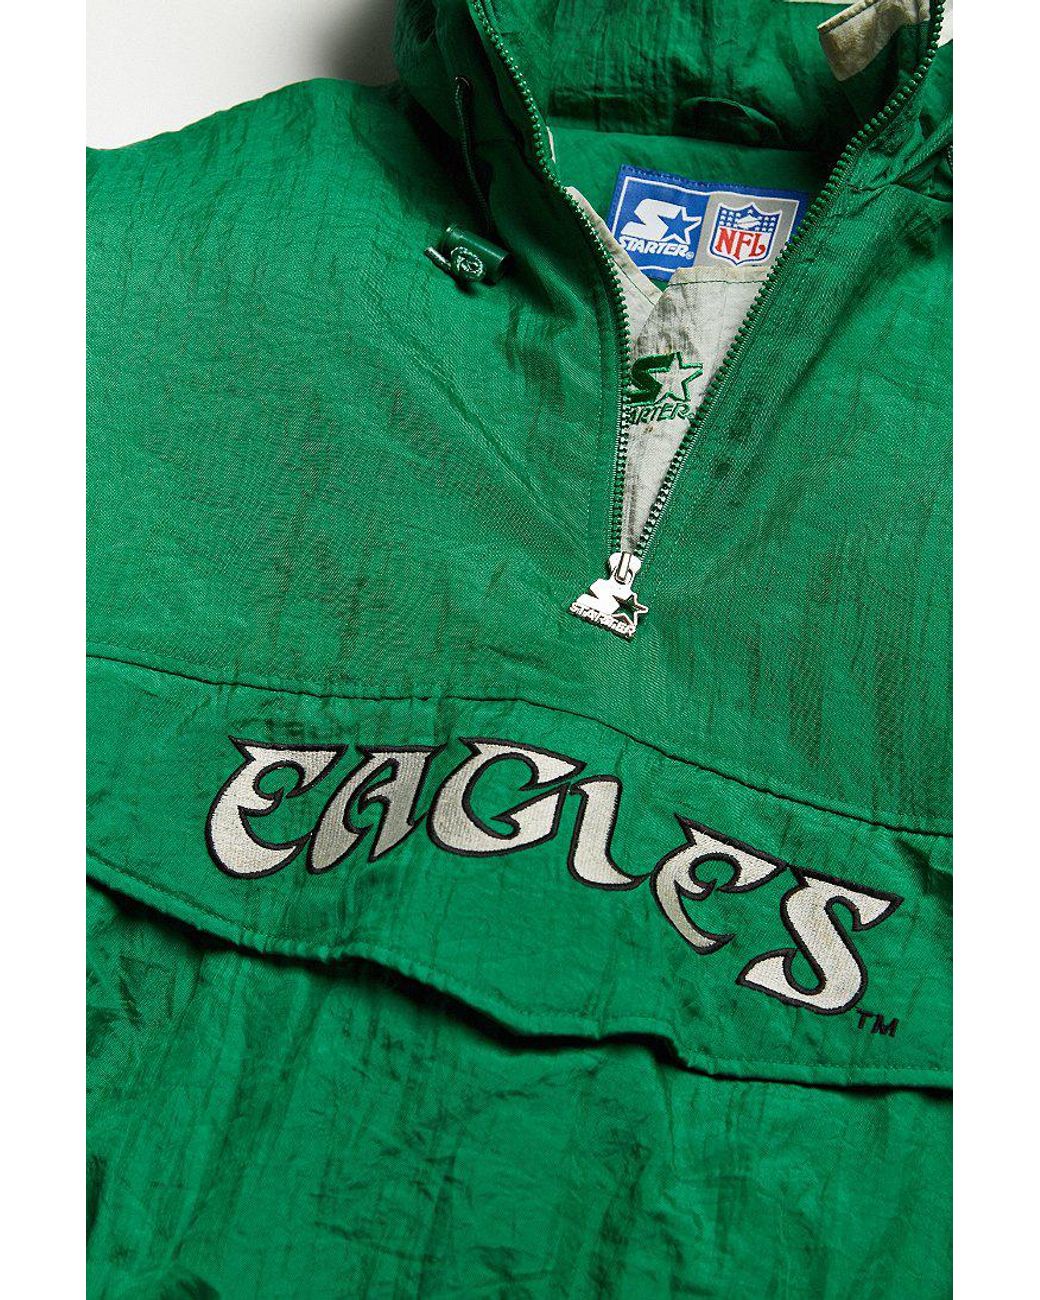 Urban Outfitters Vintage Starter Philadelphia Eagles Anorak Jacket in Green  for Men